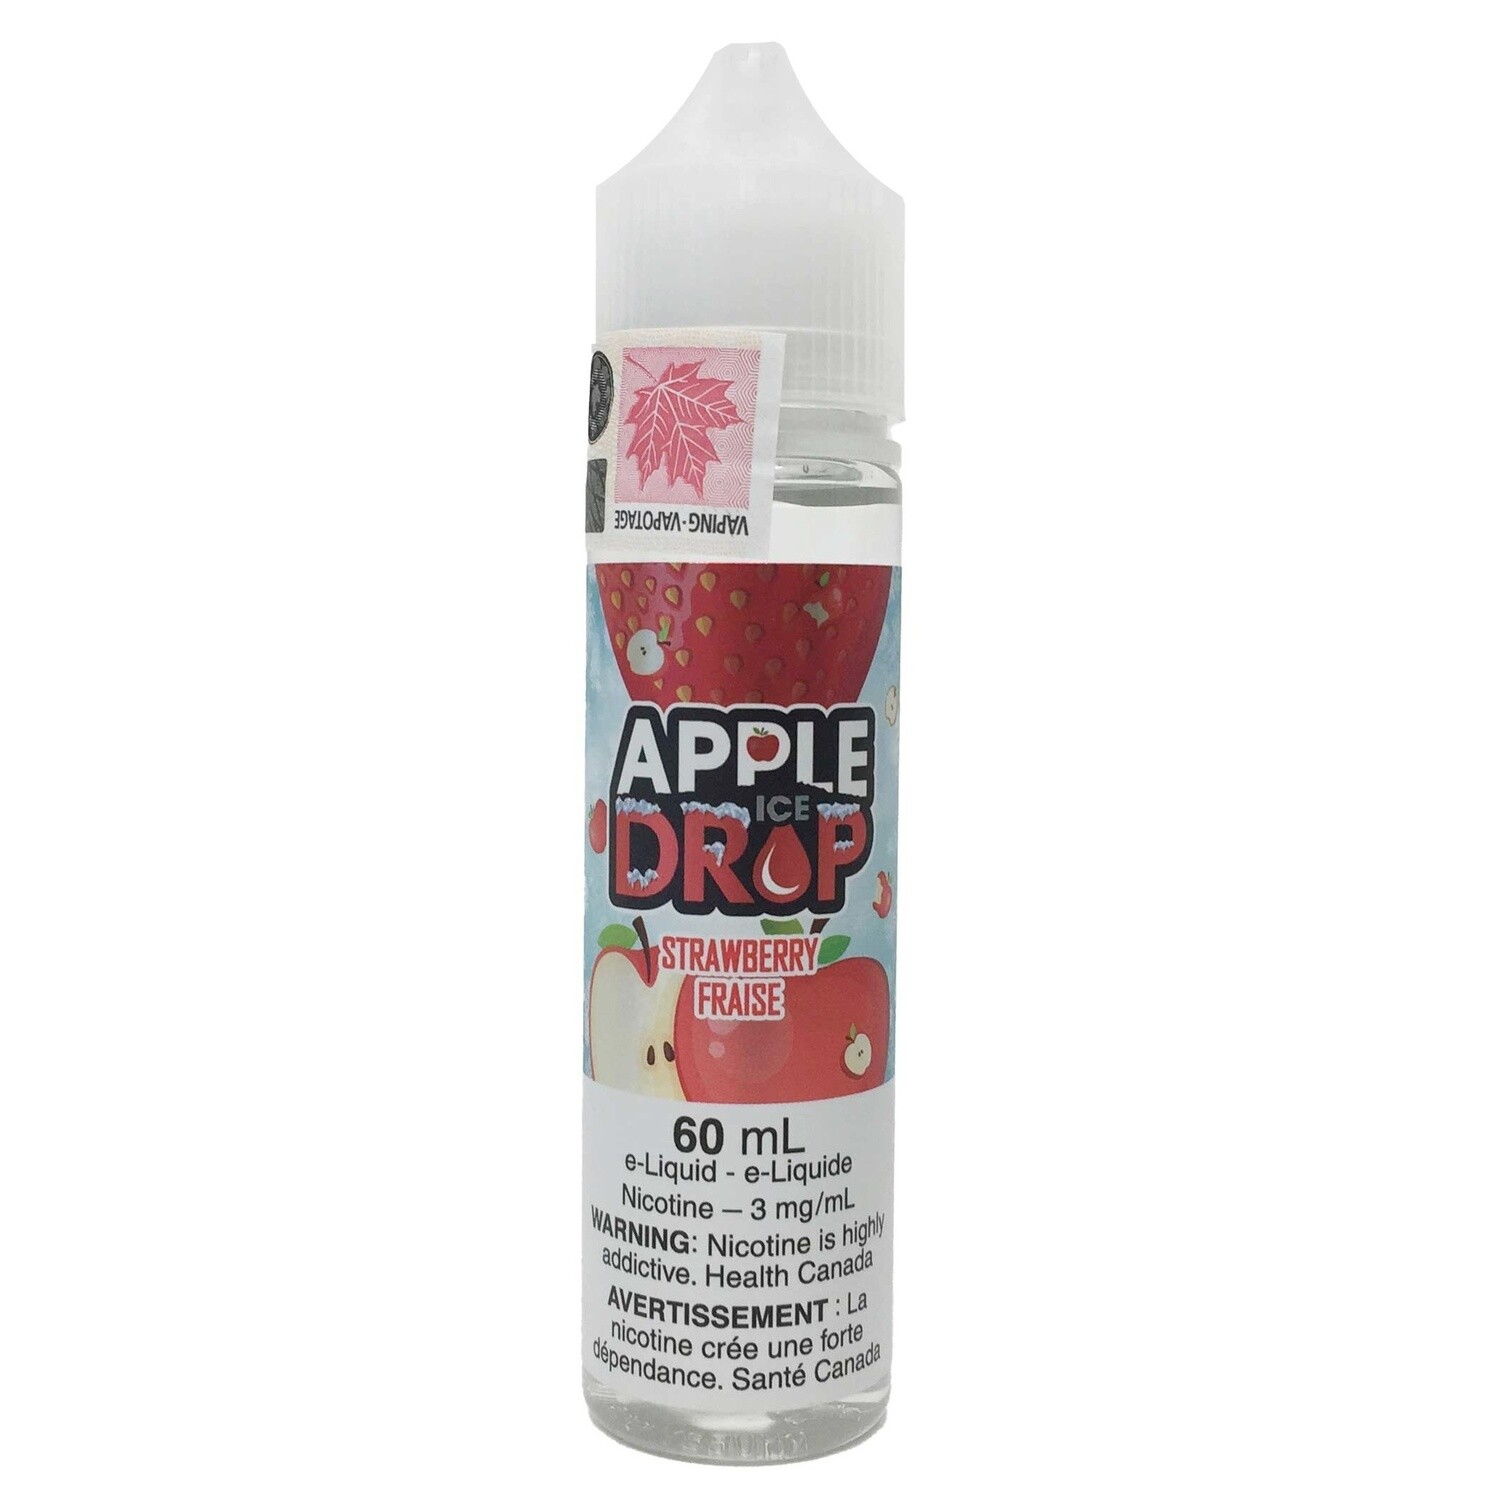 Apple Drop ICE - Strawberry (60ml) Eliquid